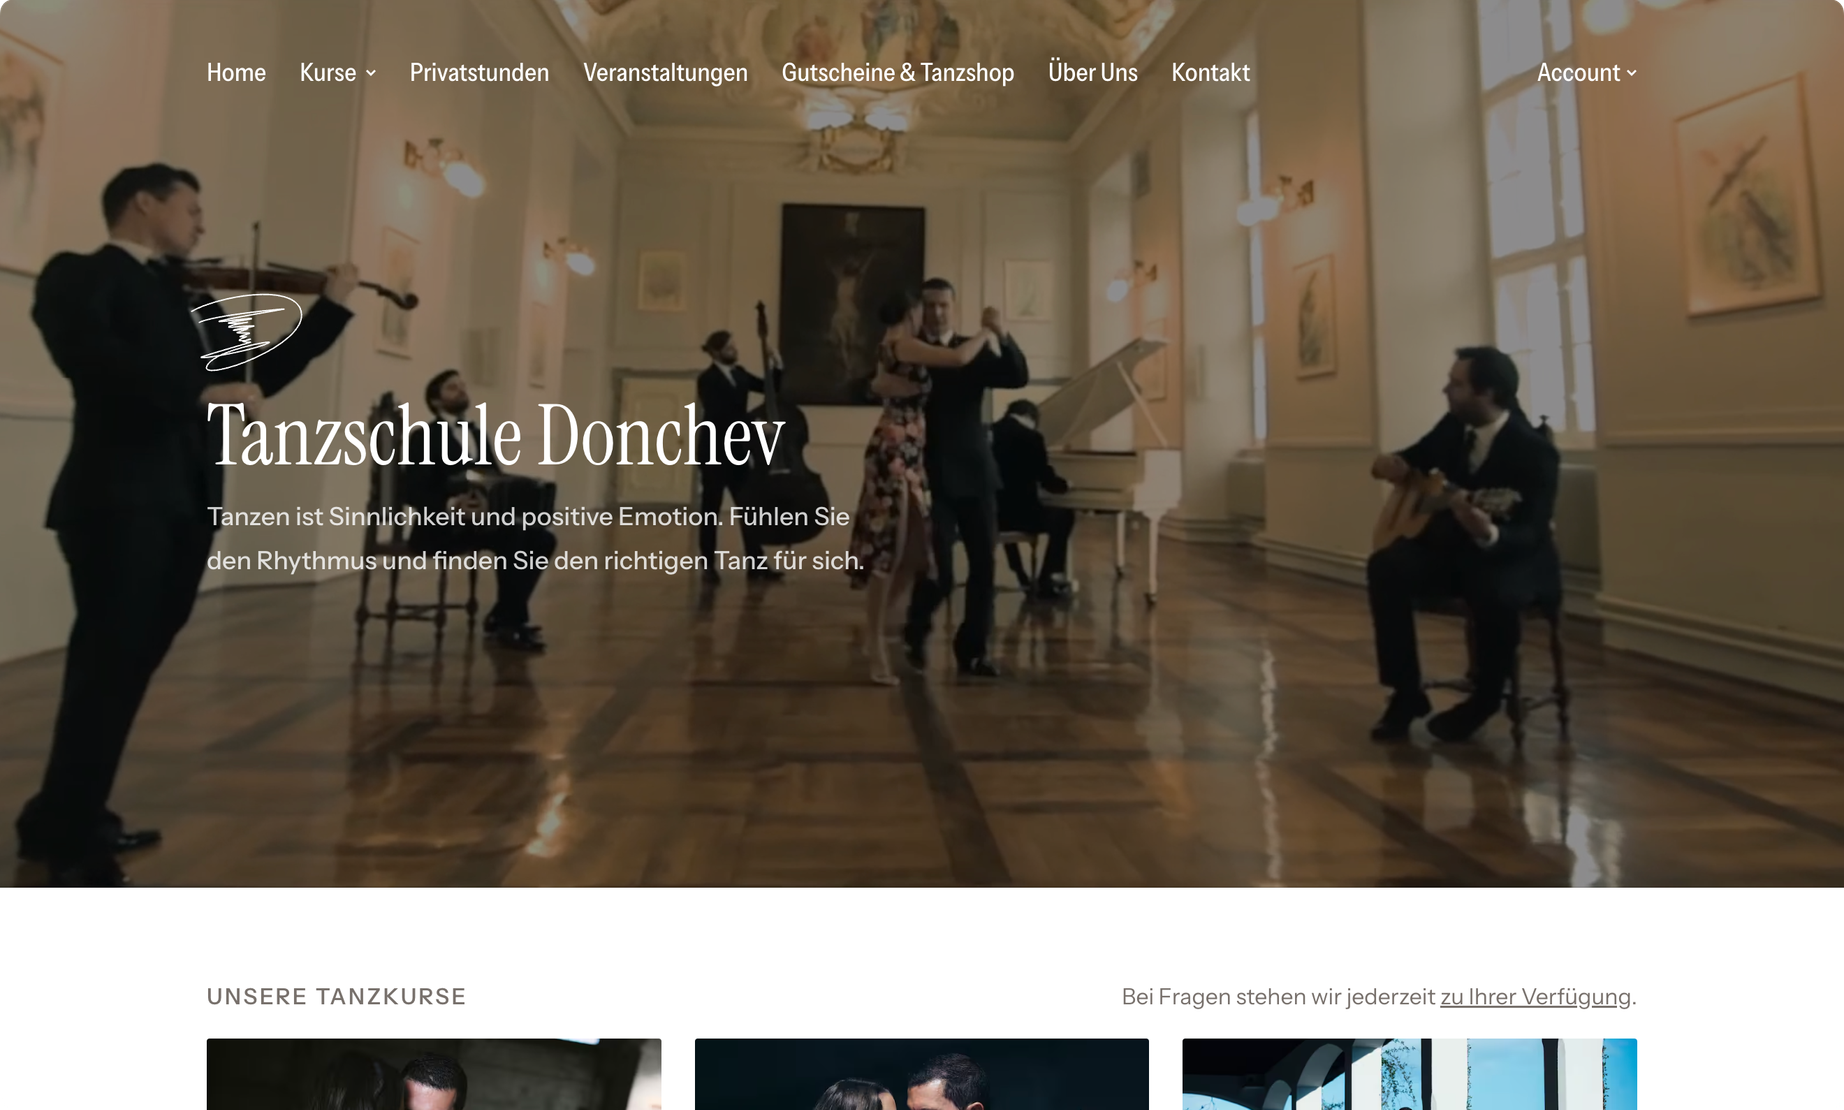 Vorschau der Website von Tanzschule Donchev.